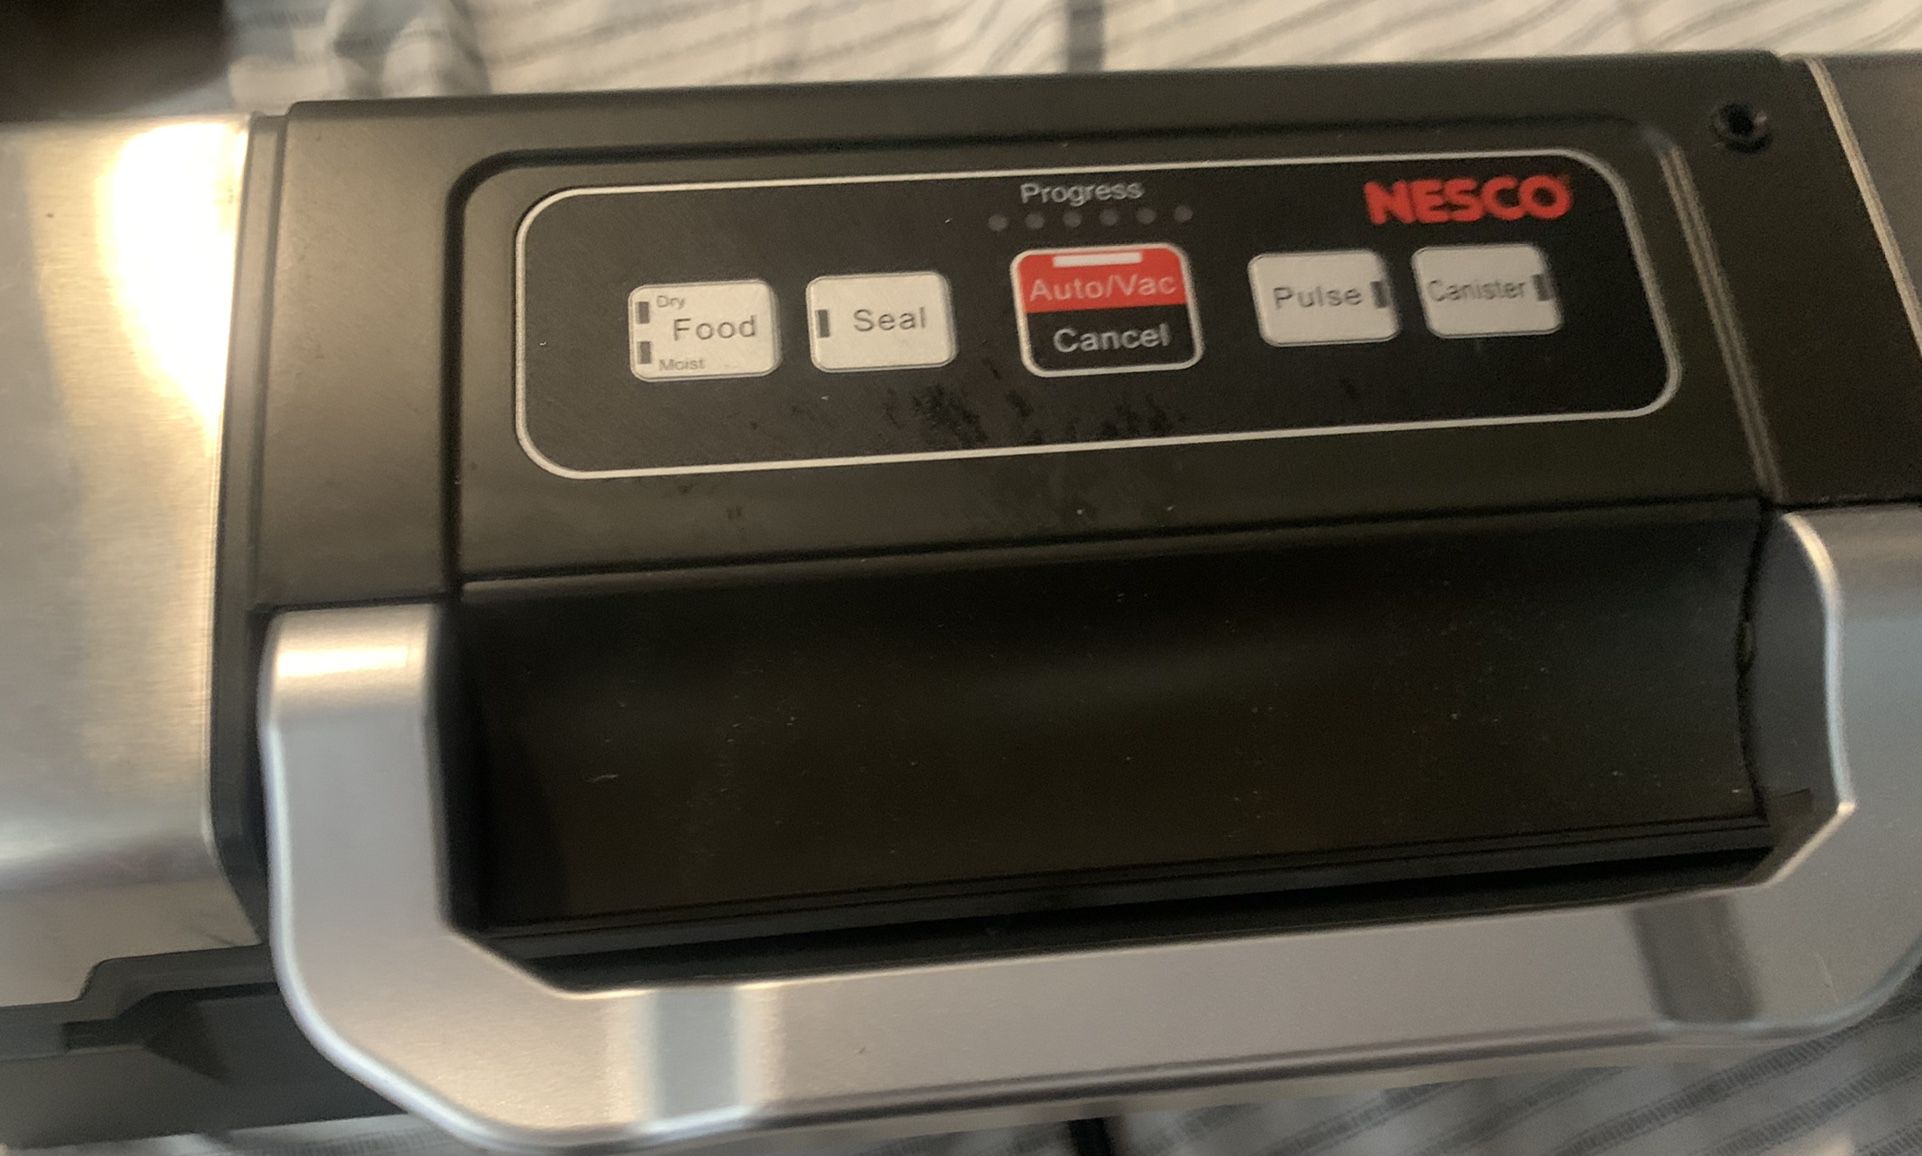 Unboxing Nesco Deluxe Vacuum Sealer Model VS-09 from Walmart. 